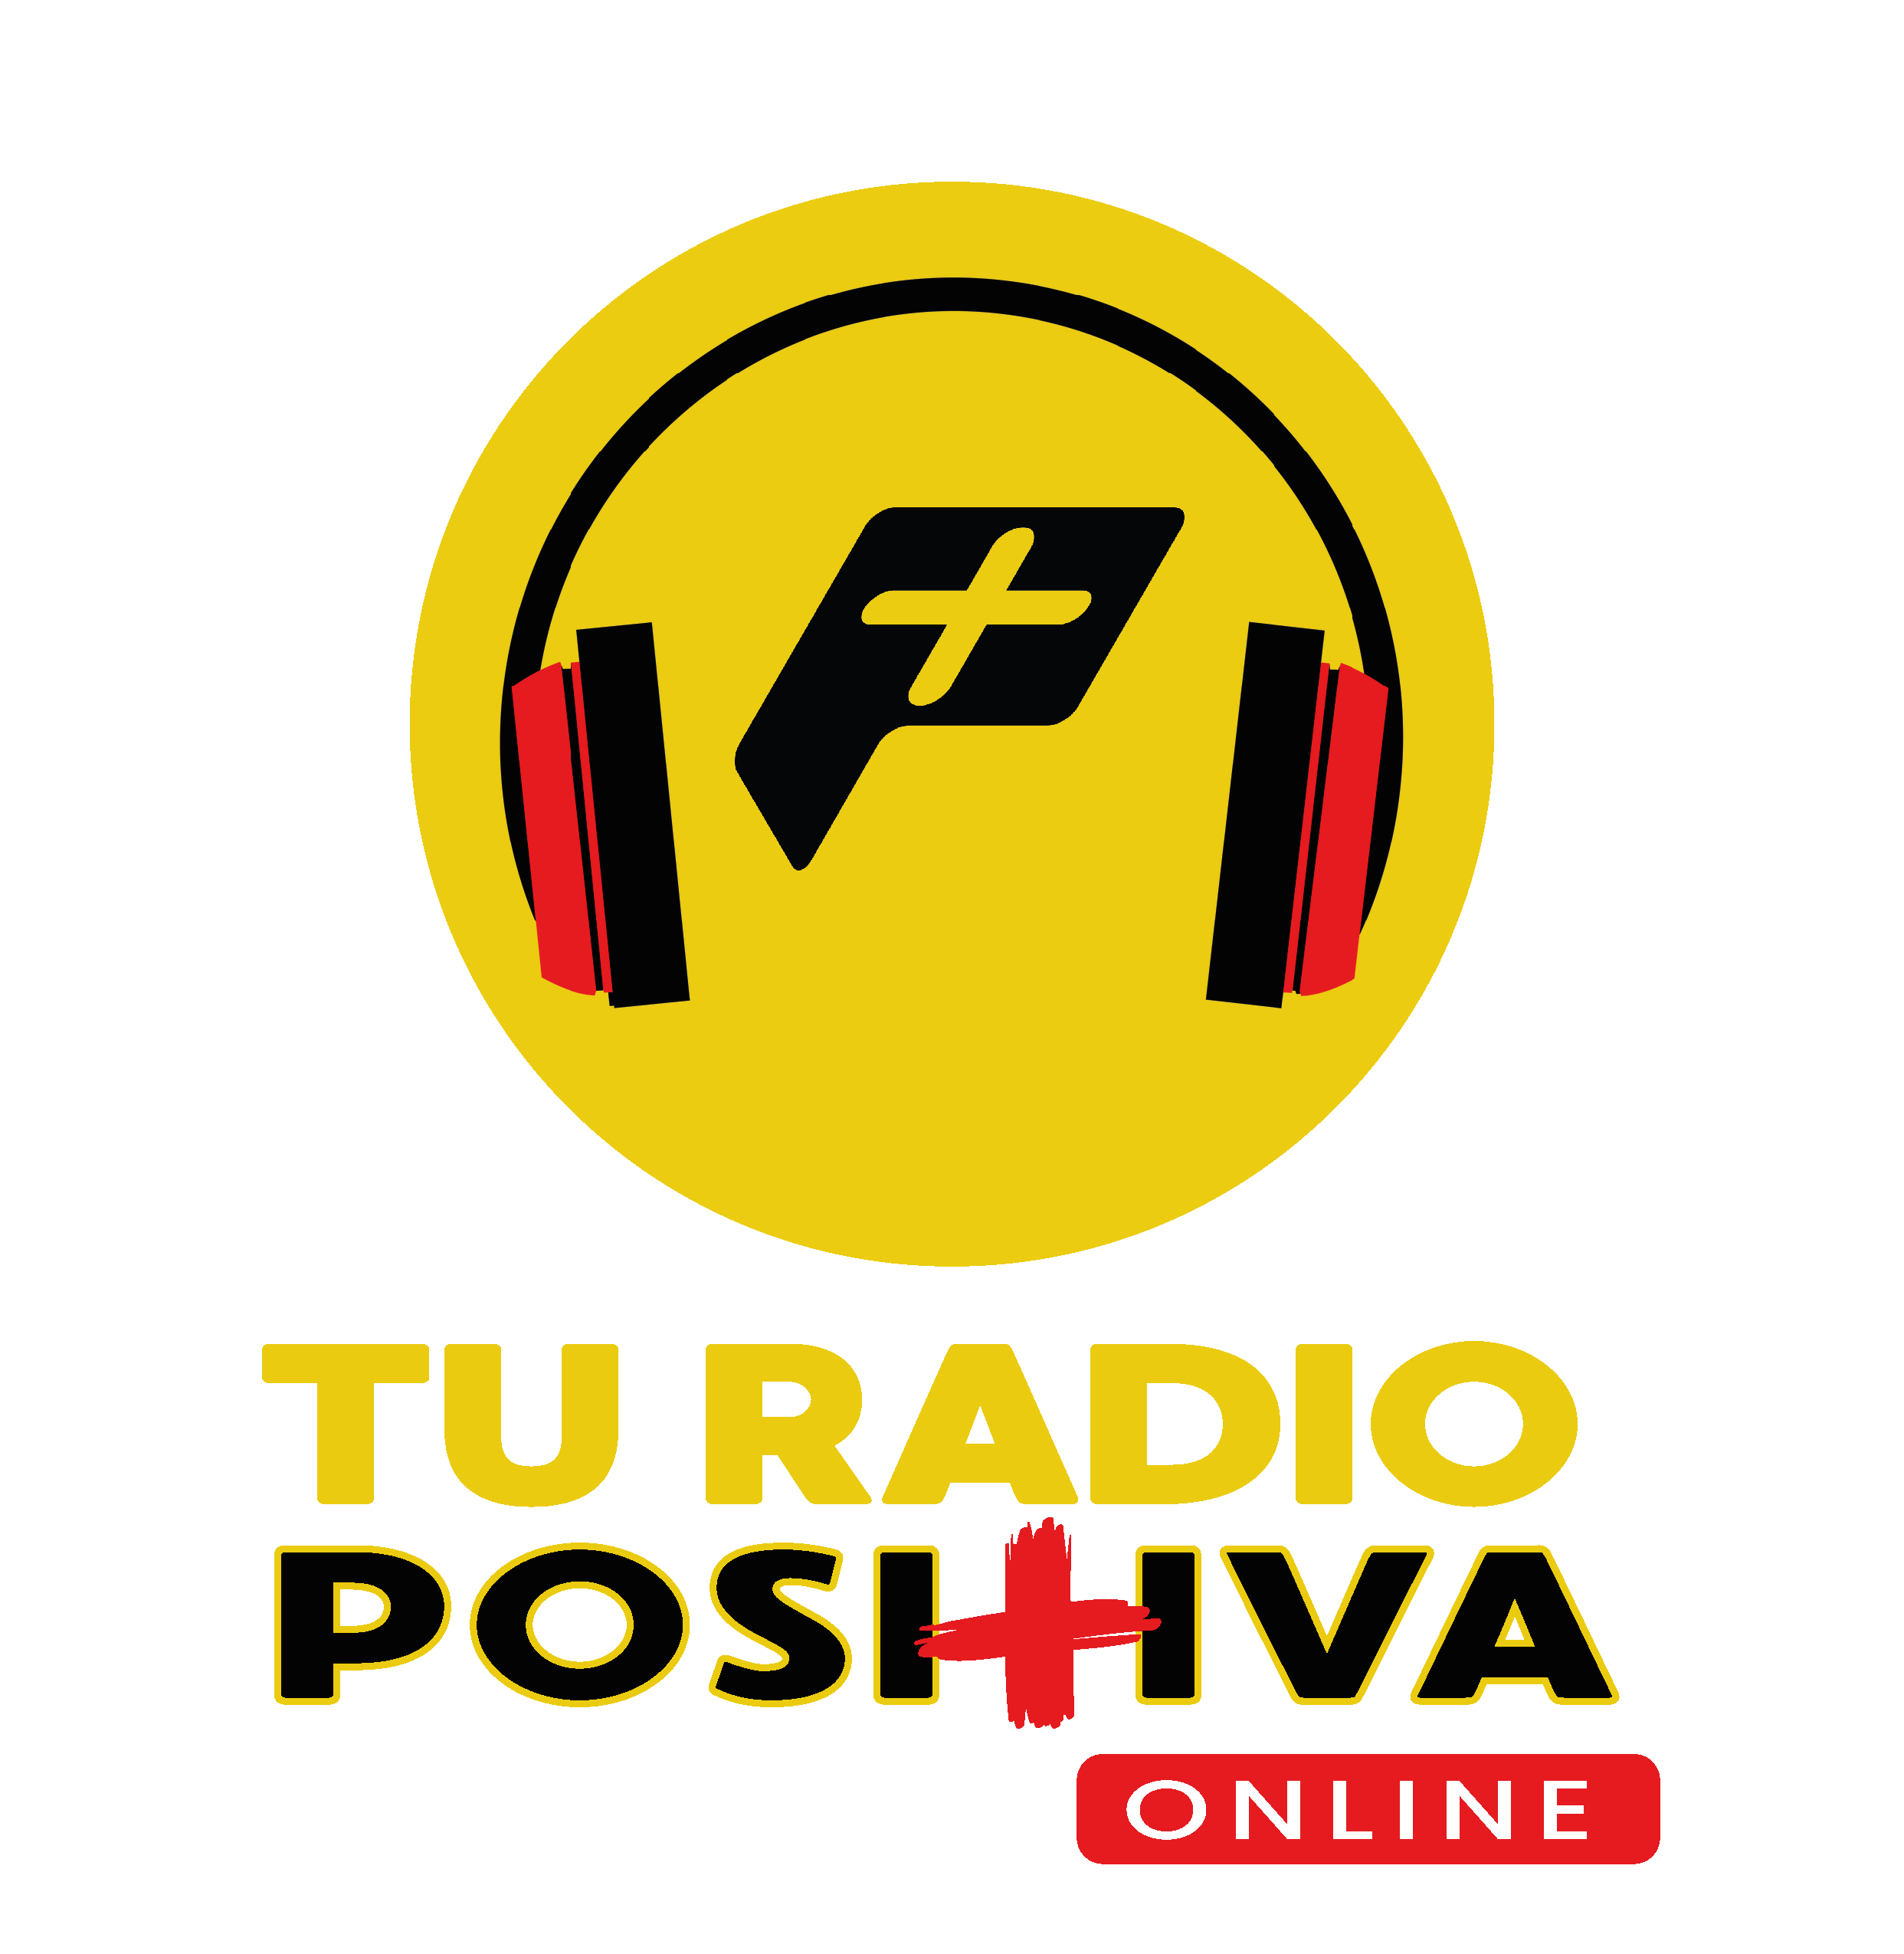 Tu Radio Positiva Online